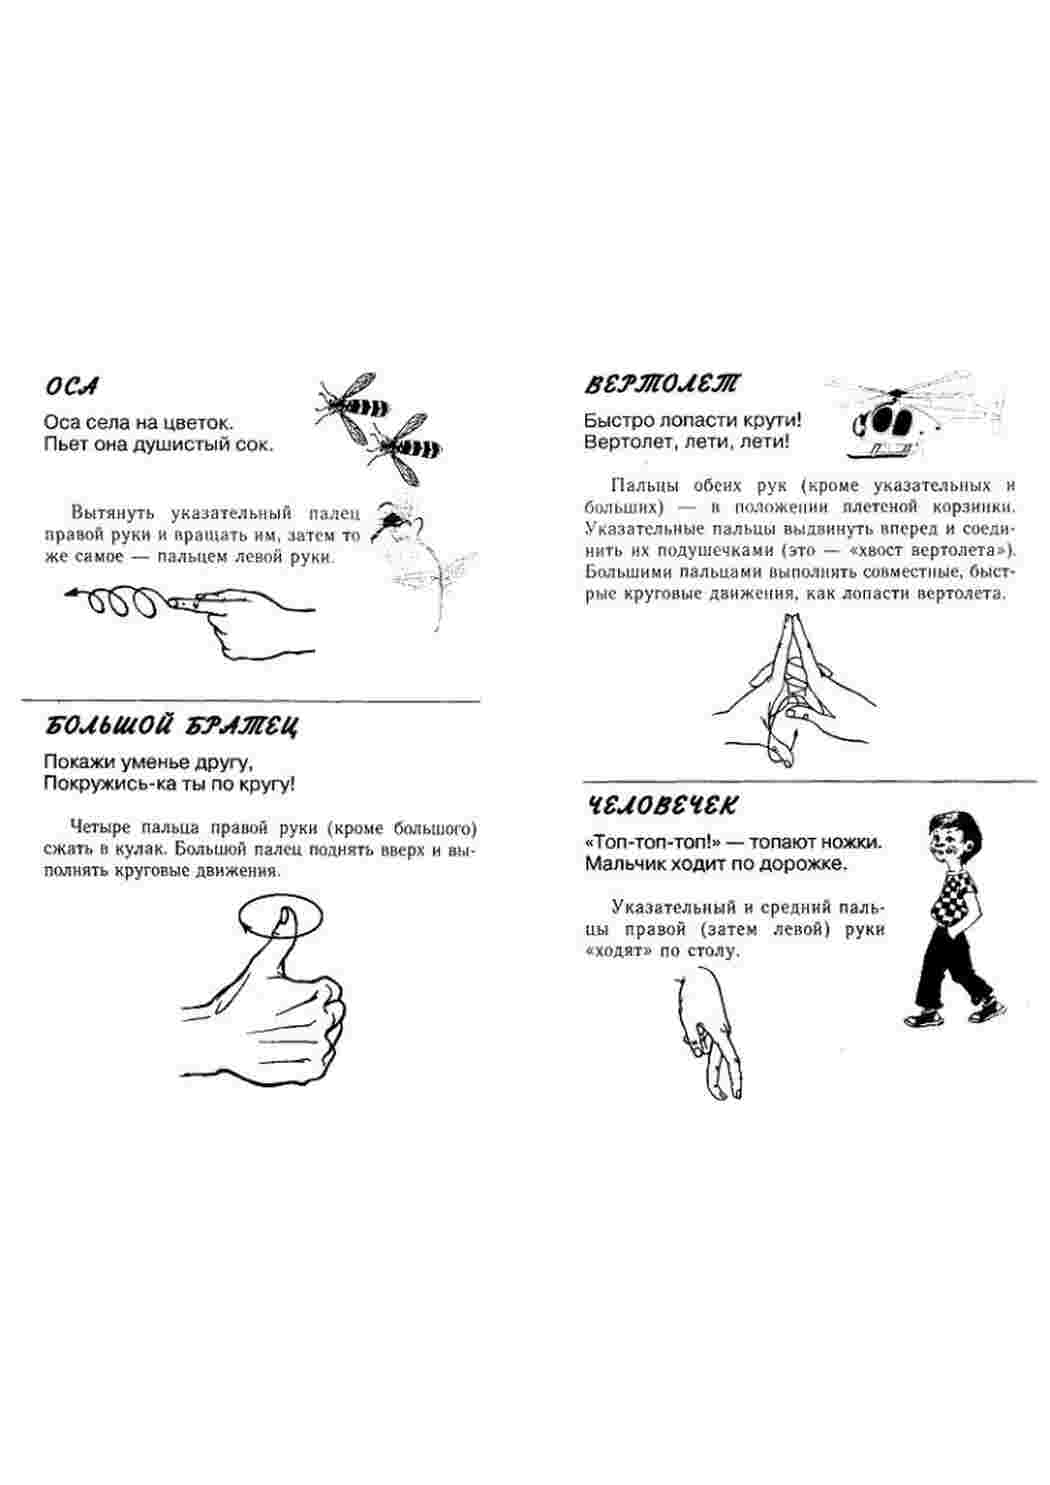 Моторика пальцев упражнения. Упражнение для развития мелкой моторики пальцев. Упражнения для мелкой моторики рук для детей. Гимнастика для мелкой моторики рук для дошкольников. Упражнения для мелкой моторики для детей пальчиковая гимнастика.